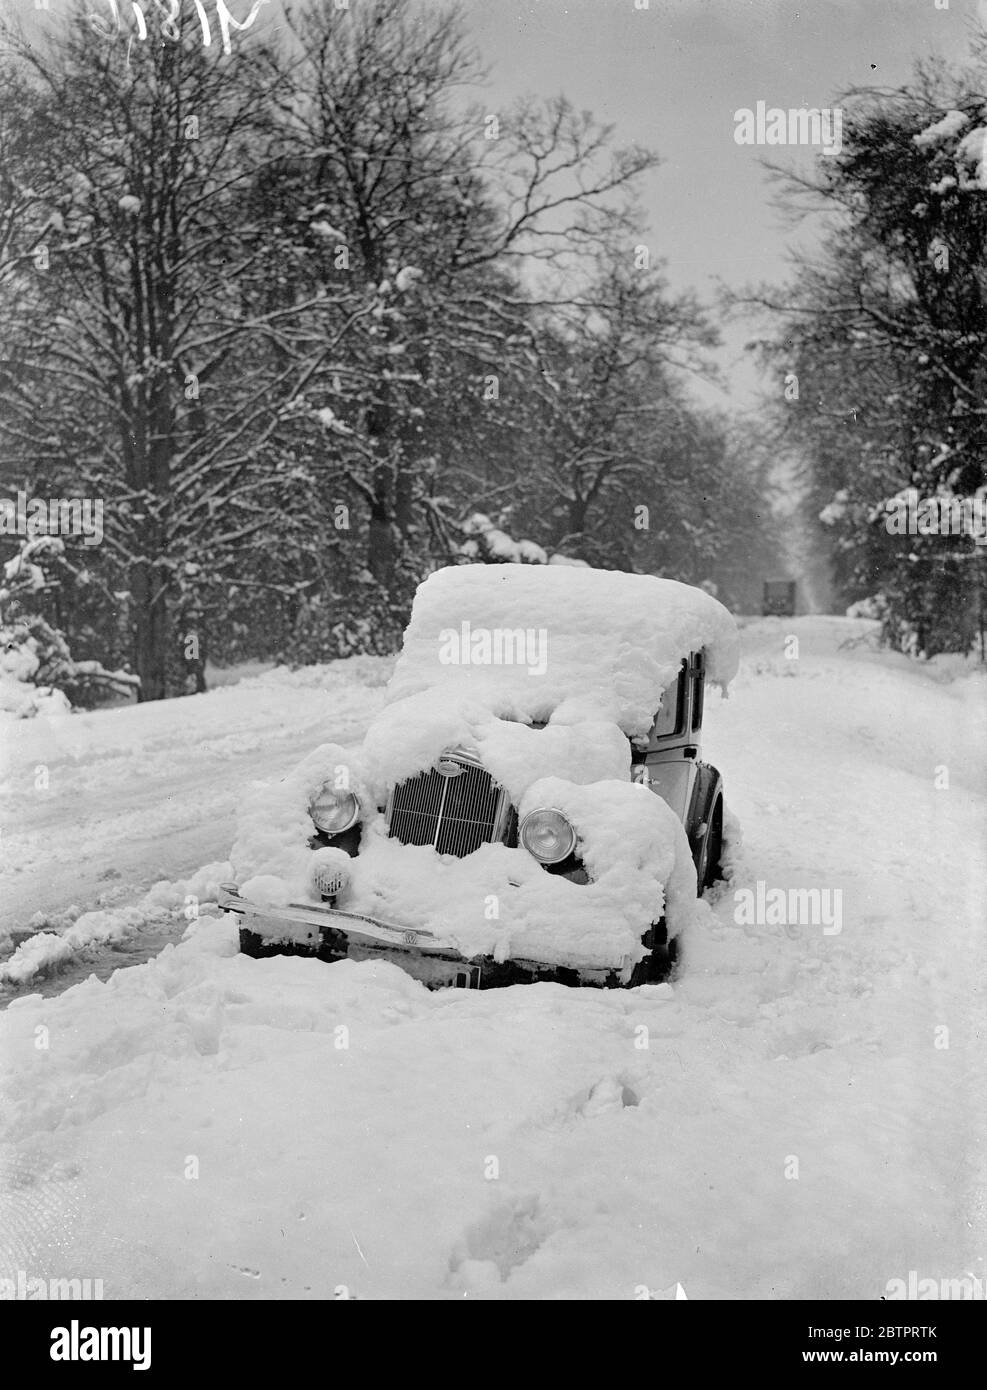 Neige « abandonnée » dans le Hampshire. Les pires tempêtes de neige de décembre depuis de nombreuses années ont semé le chaos sur la route du sud de l'Angleterre, où les voitures ont été laissées à la merci de la neige sur de nombreuses routes importantes, alors que les conducteurs cherchent un abri. Des expositions de photos et des charrettes abandonnées recouvertes de neige épaisse sur la route de Cadnum - Ringwood dans le Hampshire. 9 décembre 1937 Banque D'Images